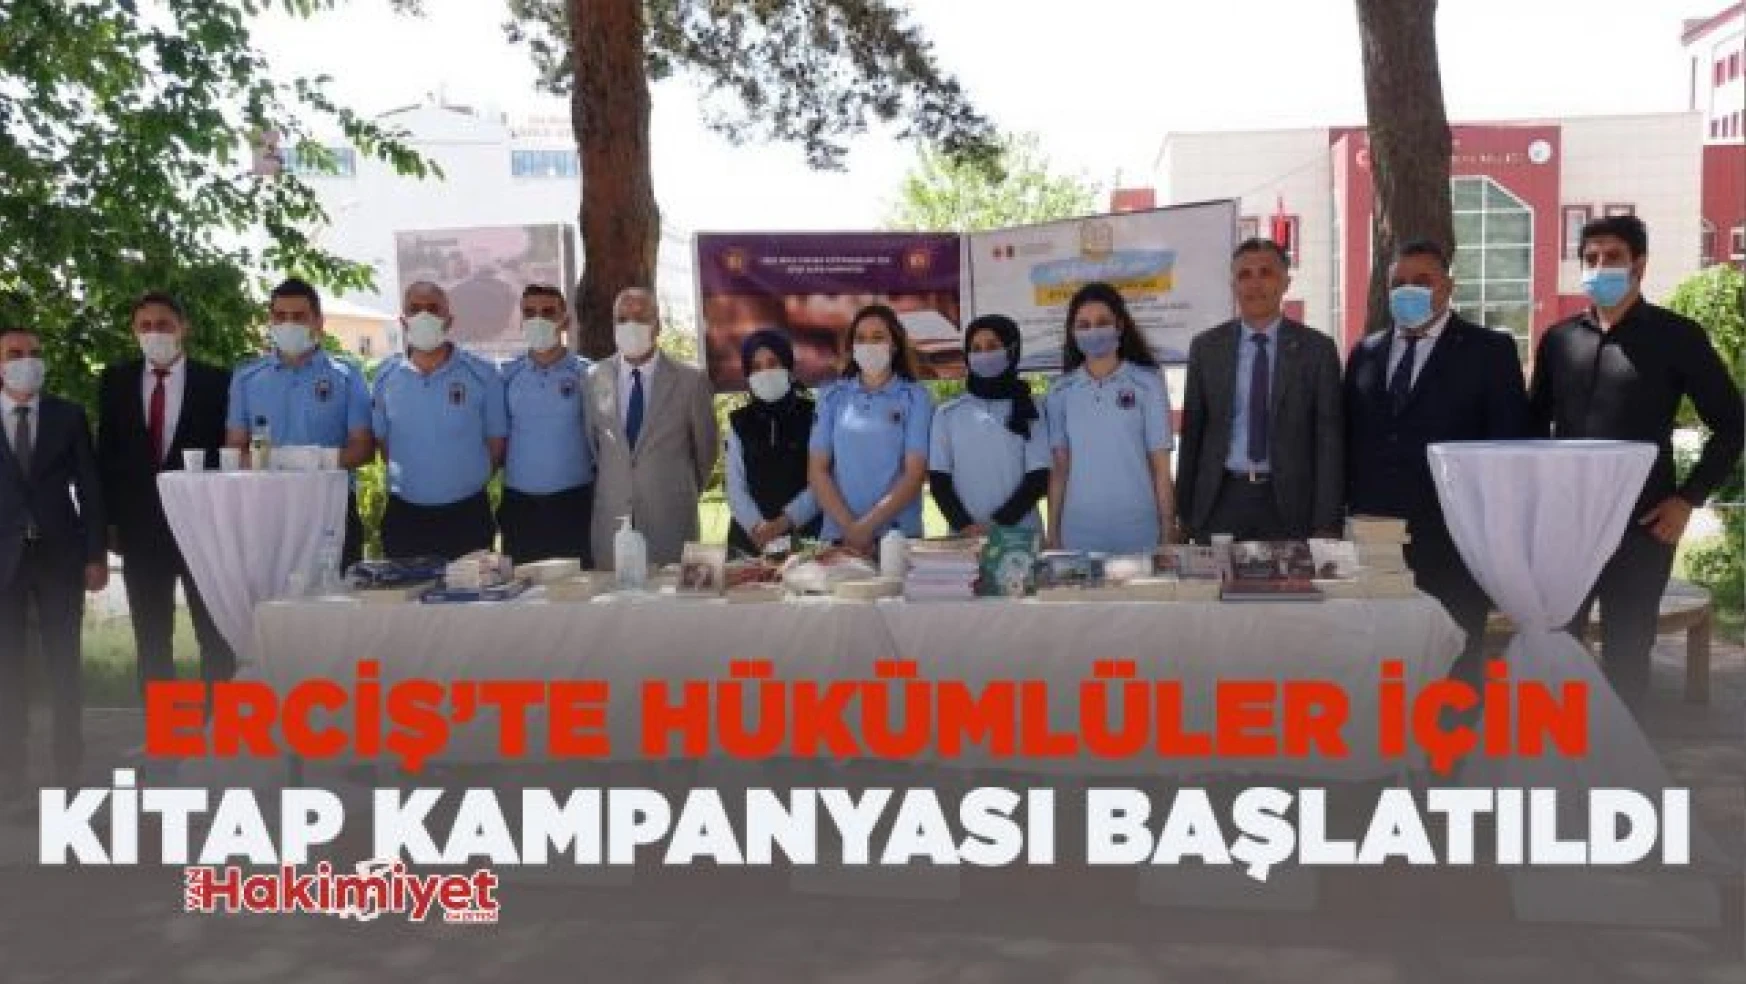 Erciş'te hükümlü ve tutuklular için kitap bağış kampanyası başlatıldı